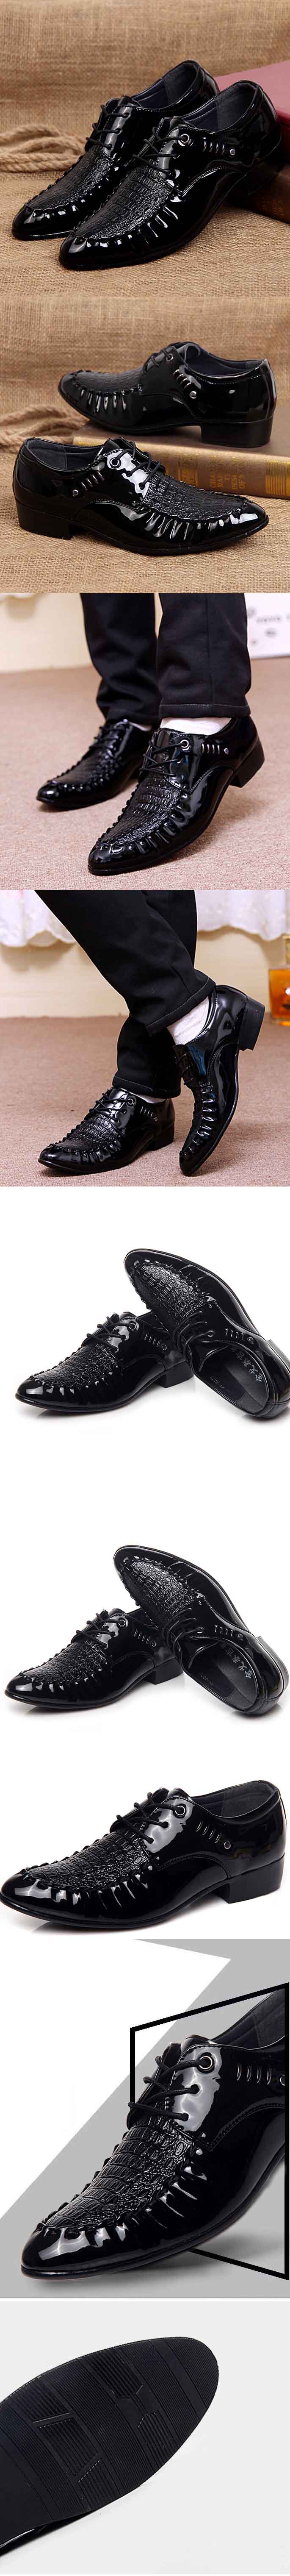 jual sepatu pantofel pria import dengan desain keren ala korea , temukan koleksi sepatu pantofel pria online terlengkap hanya di pfp store